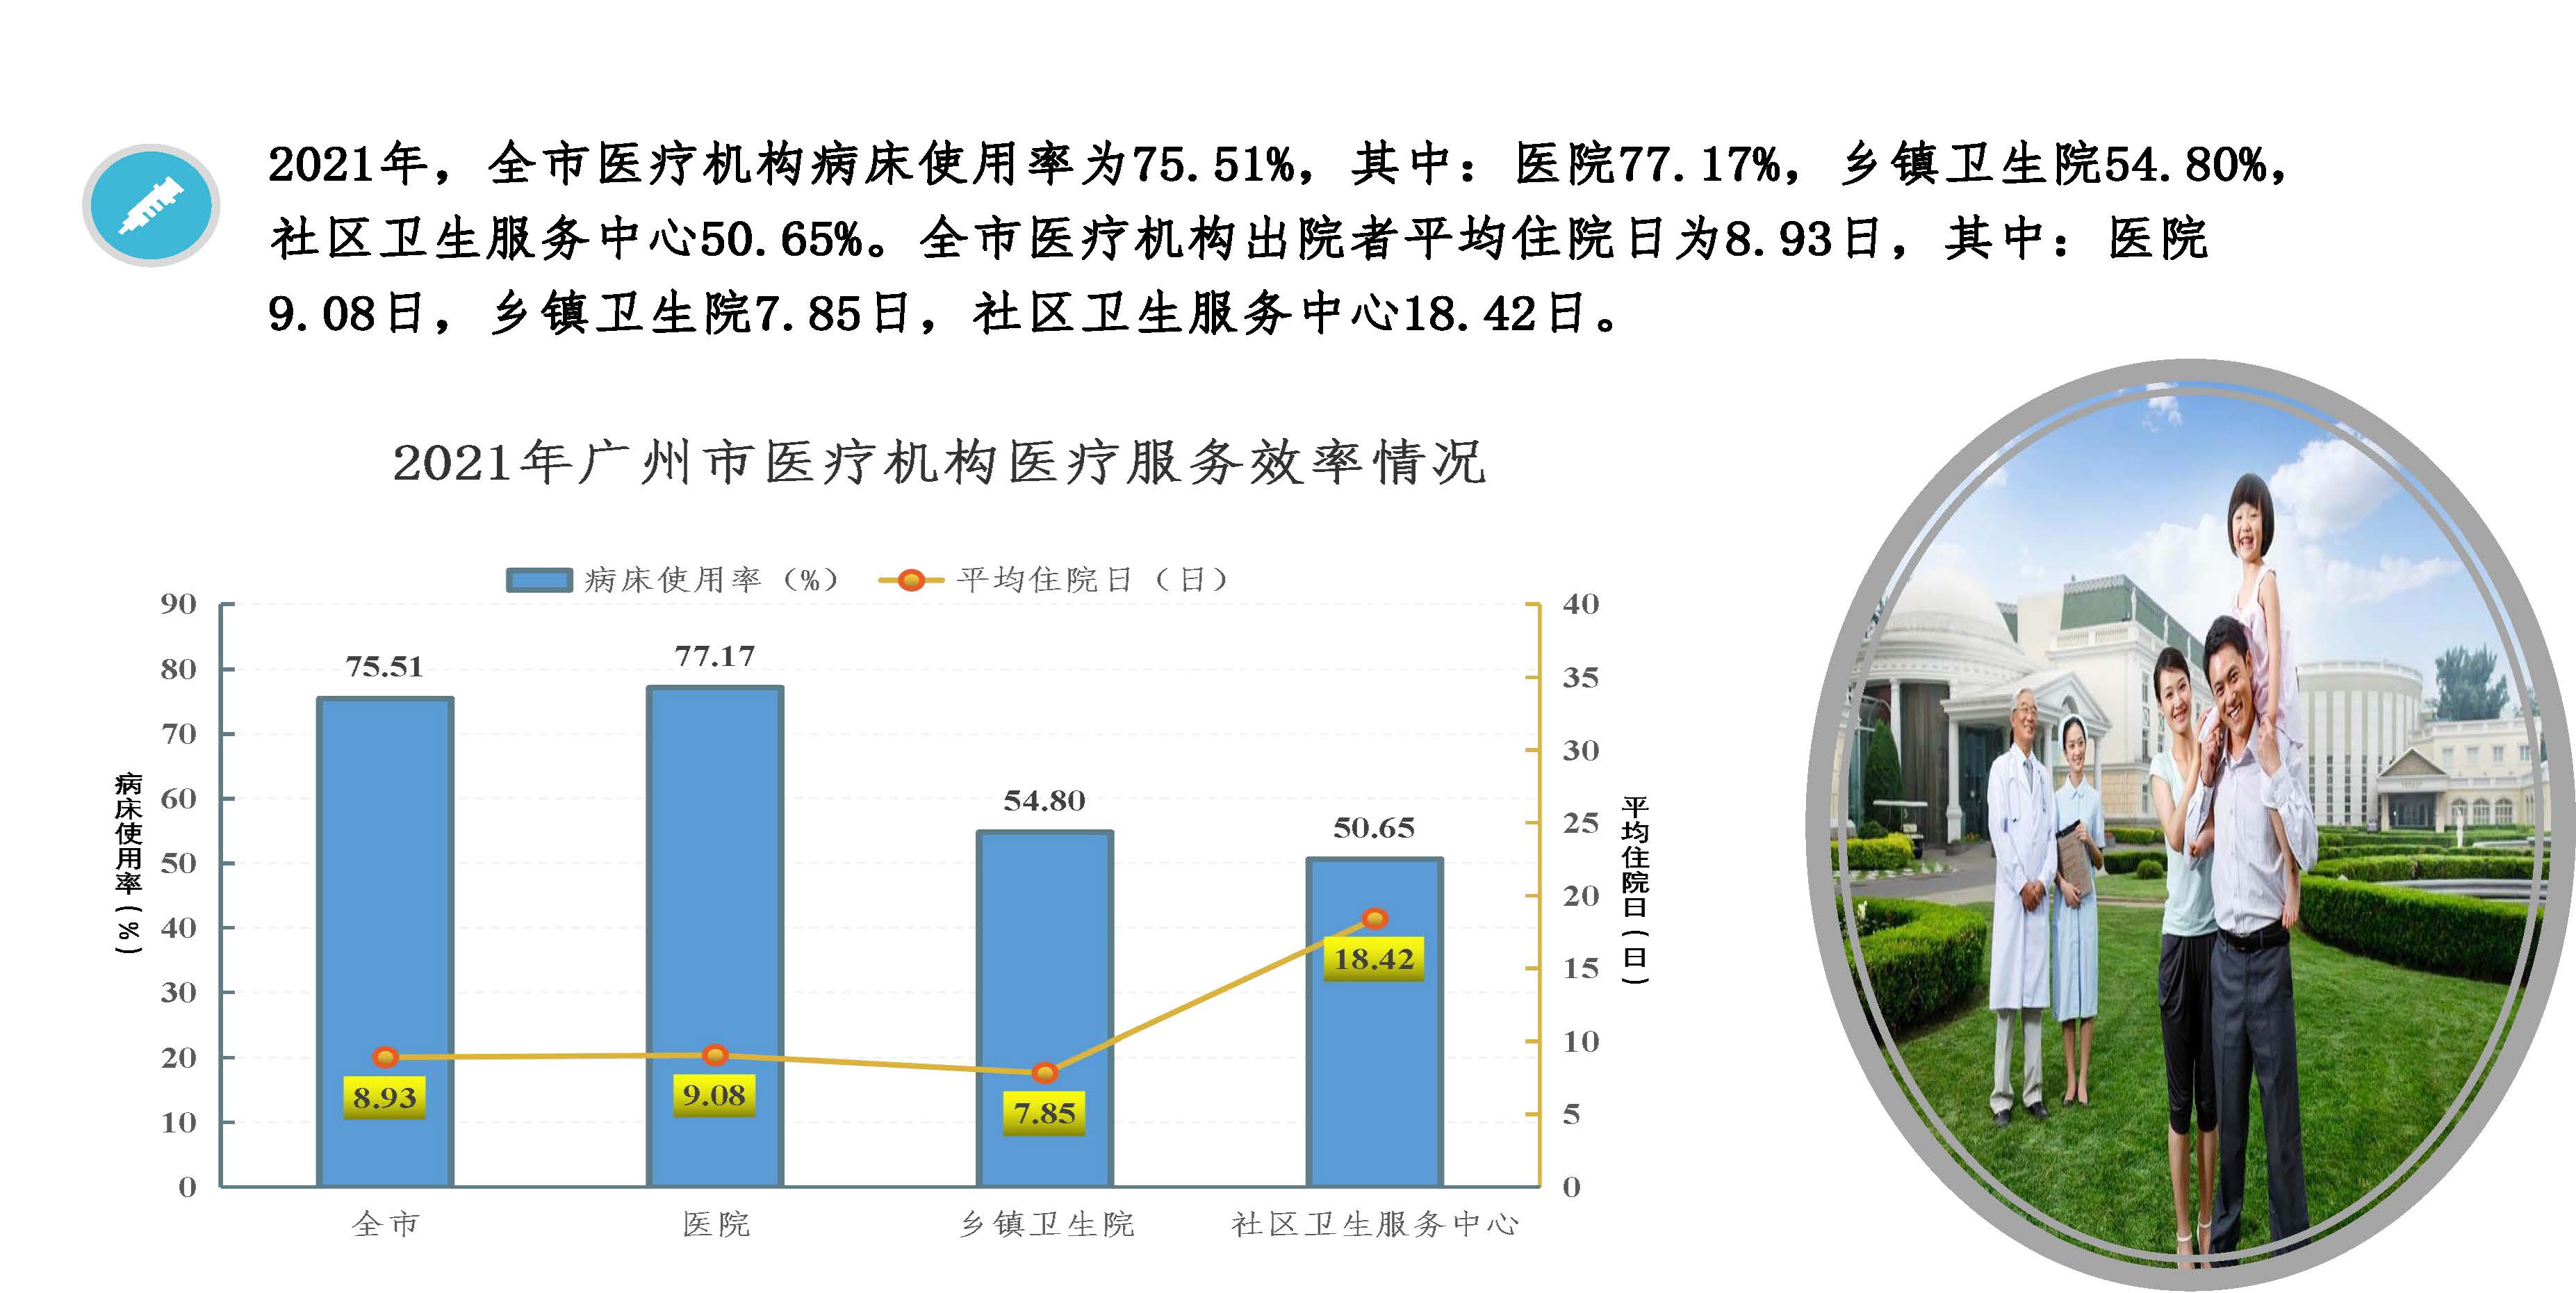 图解2021年广州市卫生事业发展情况20220424817_页面_09.jpg